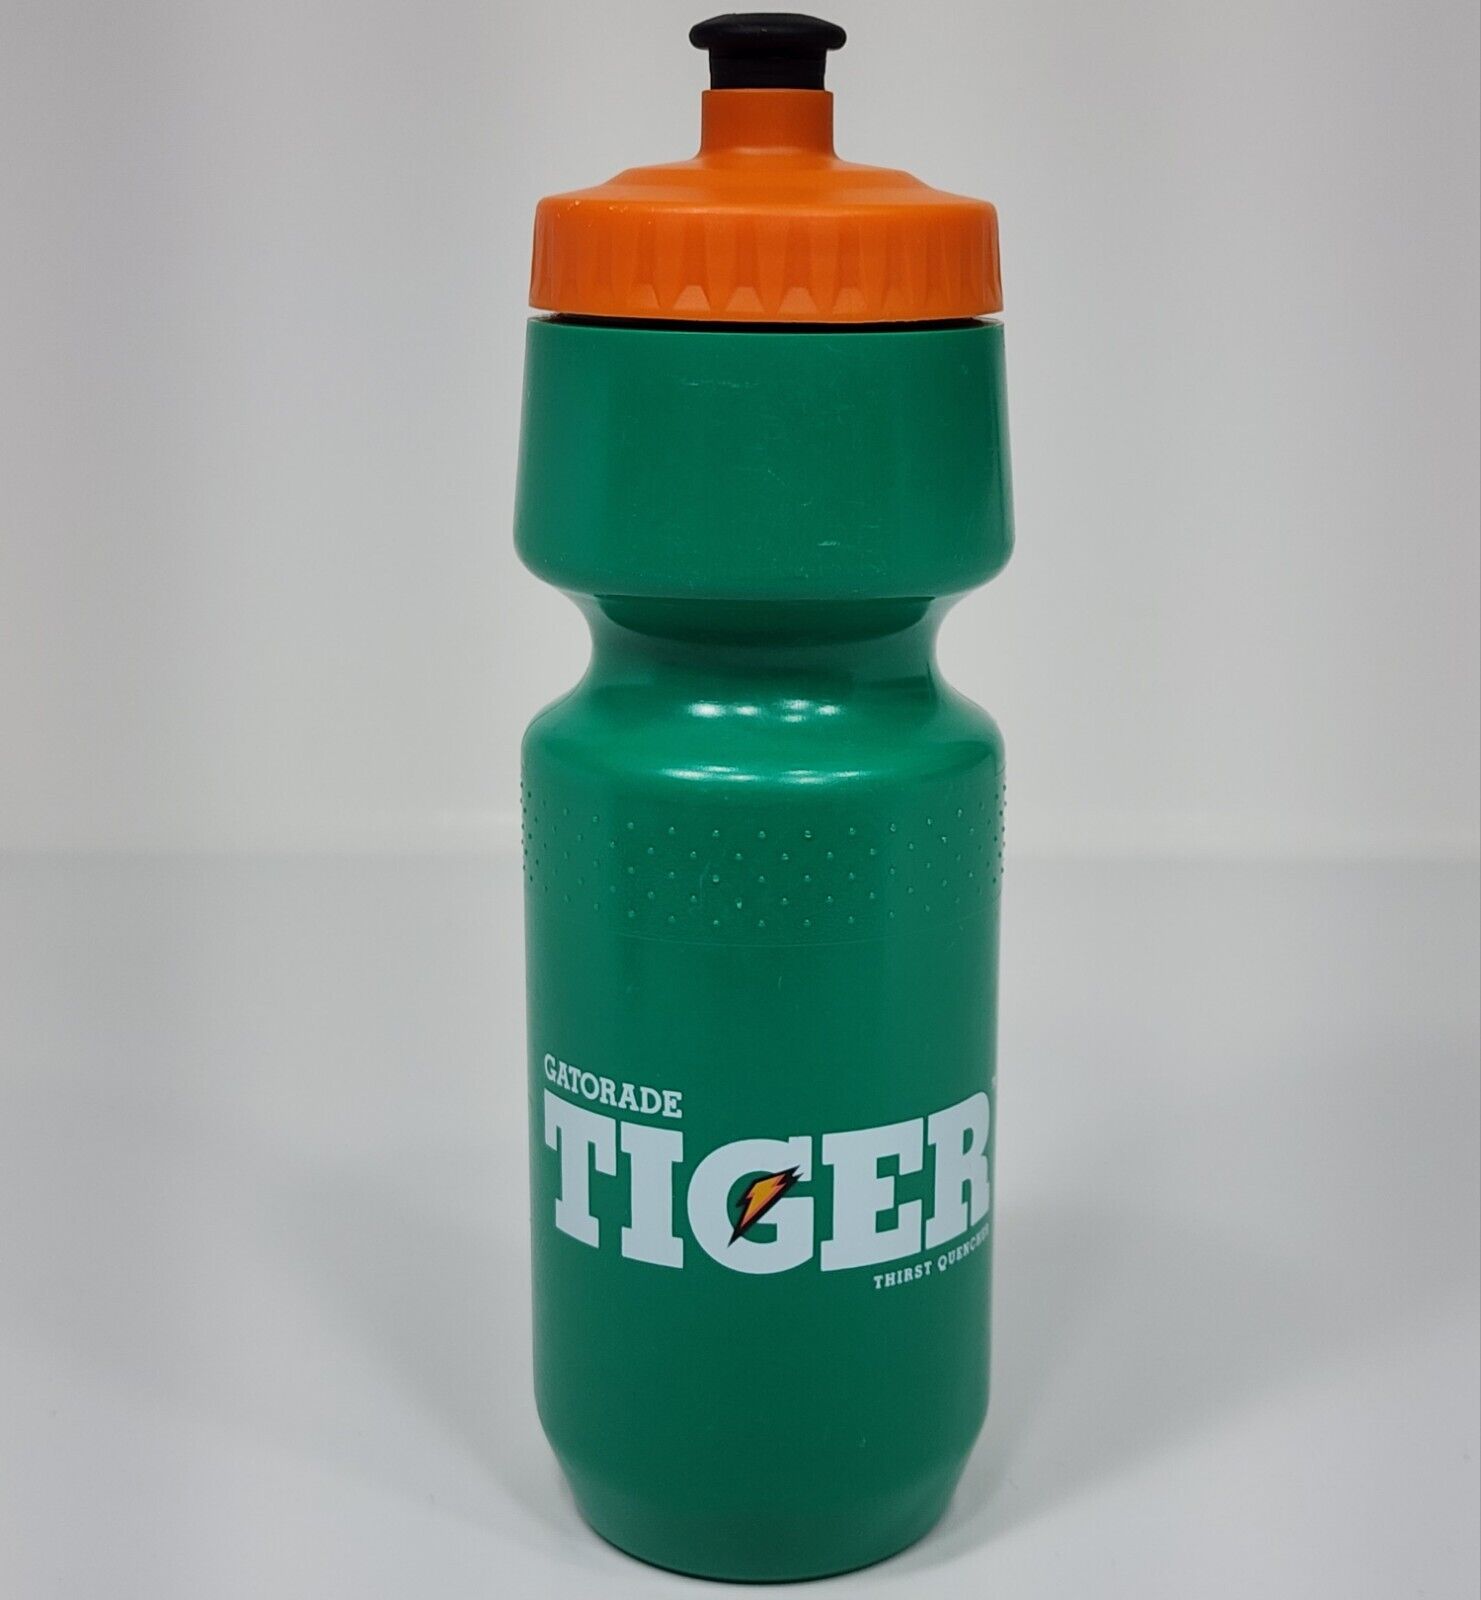 Gatorade Tiger Woods Water Bottle Thirst Quencher Vintage Orange Green Plastic